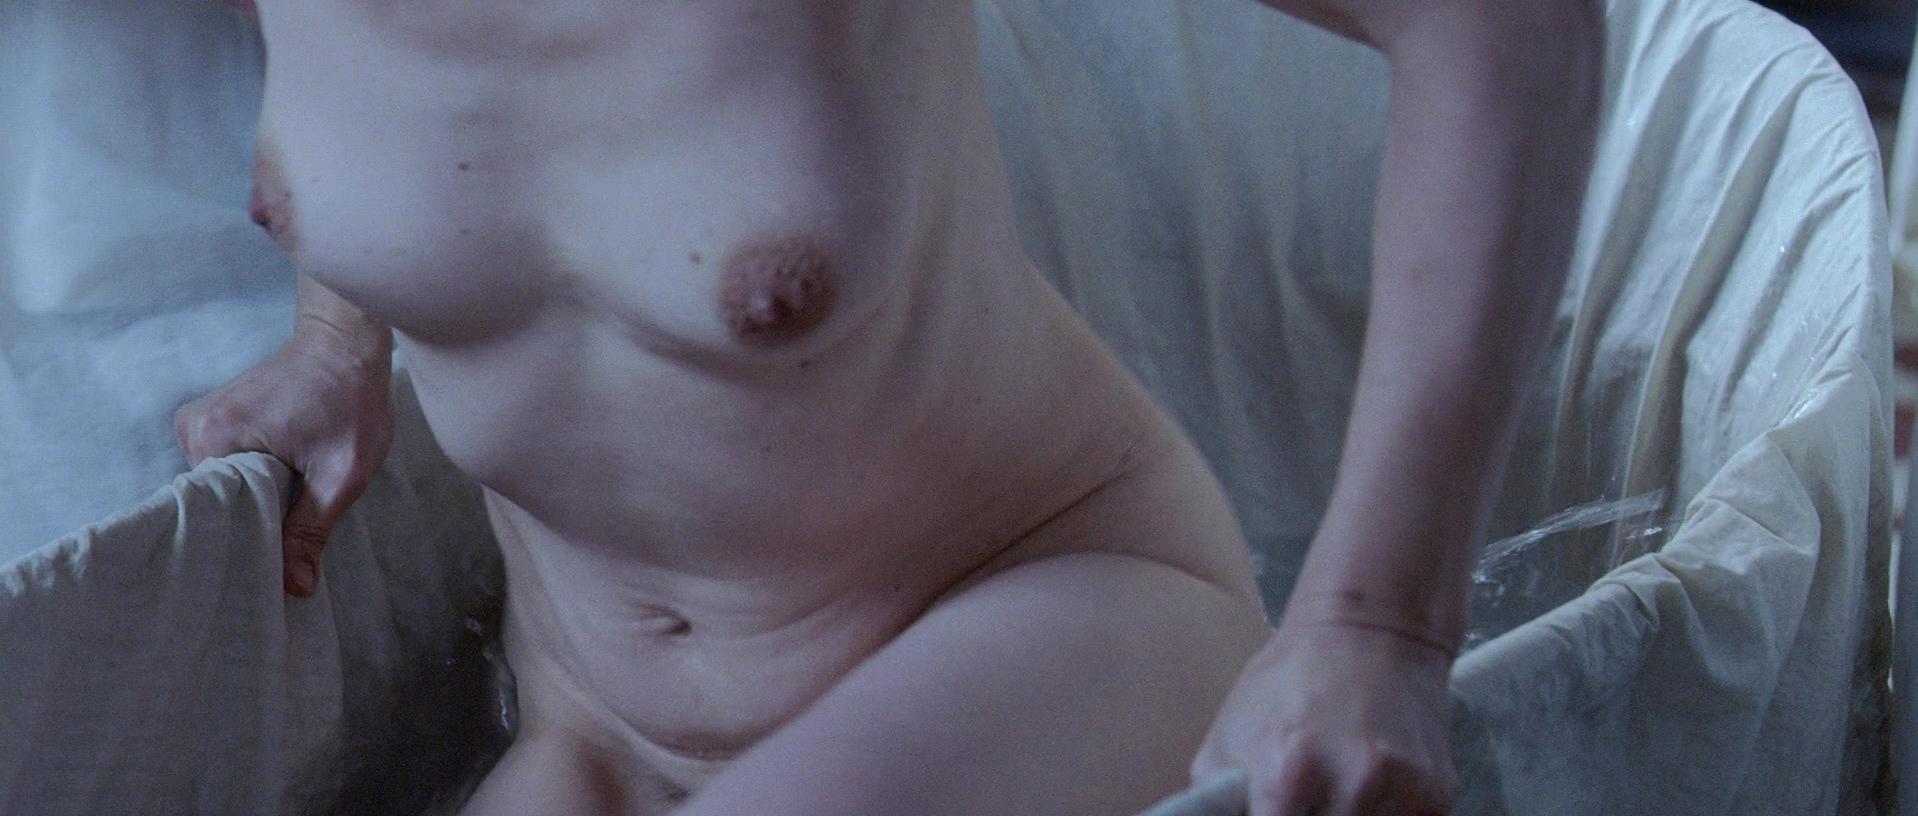 Nude Video Celebs Juliette Binoche Nude Camille Claudel 1915 2013